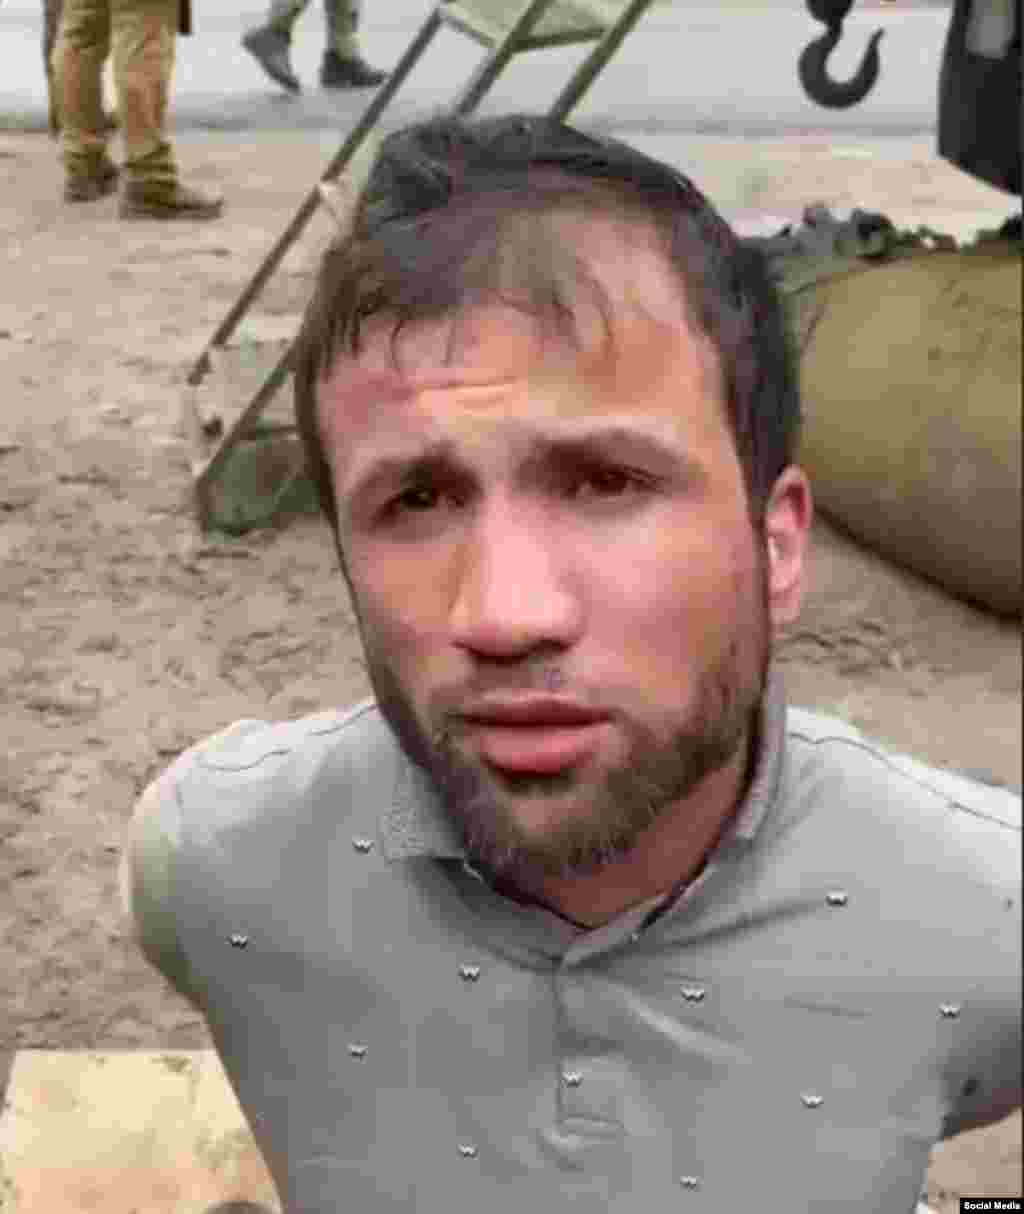 Faridun Shamsiddin este filmat aparent nevătămat imediat după capturarea sa în regiunea Bryansk pe 23 martie.